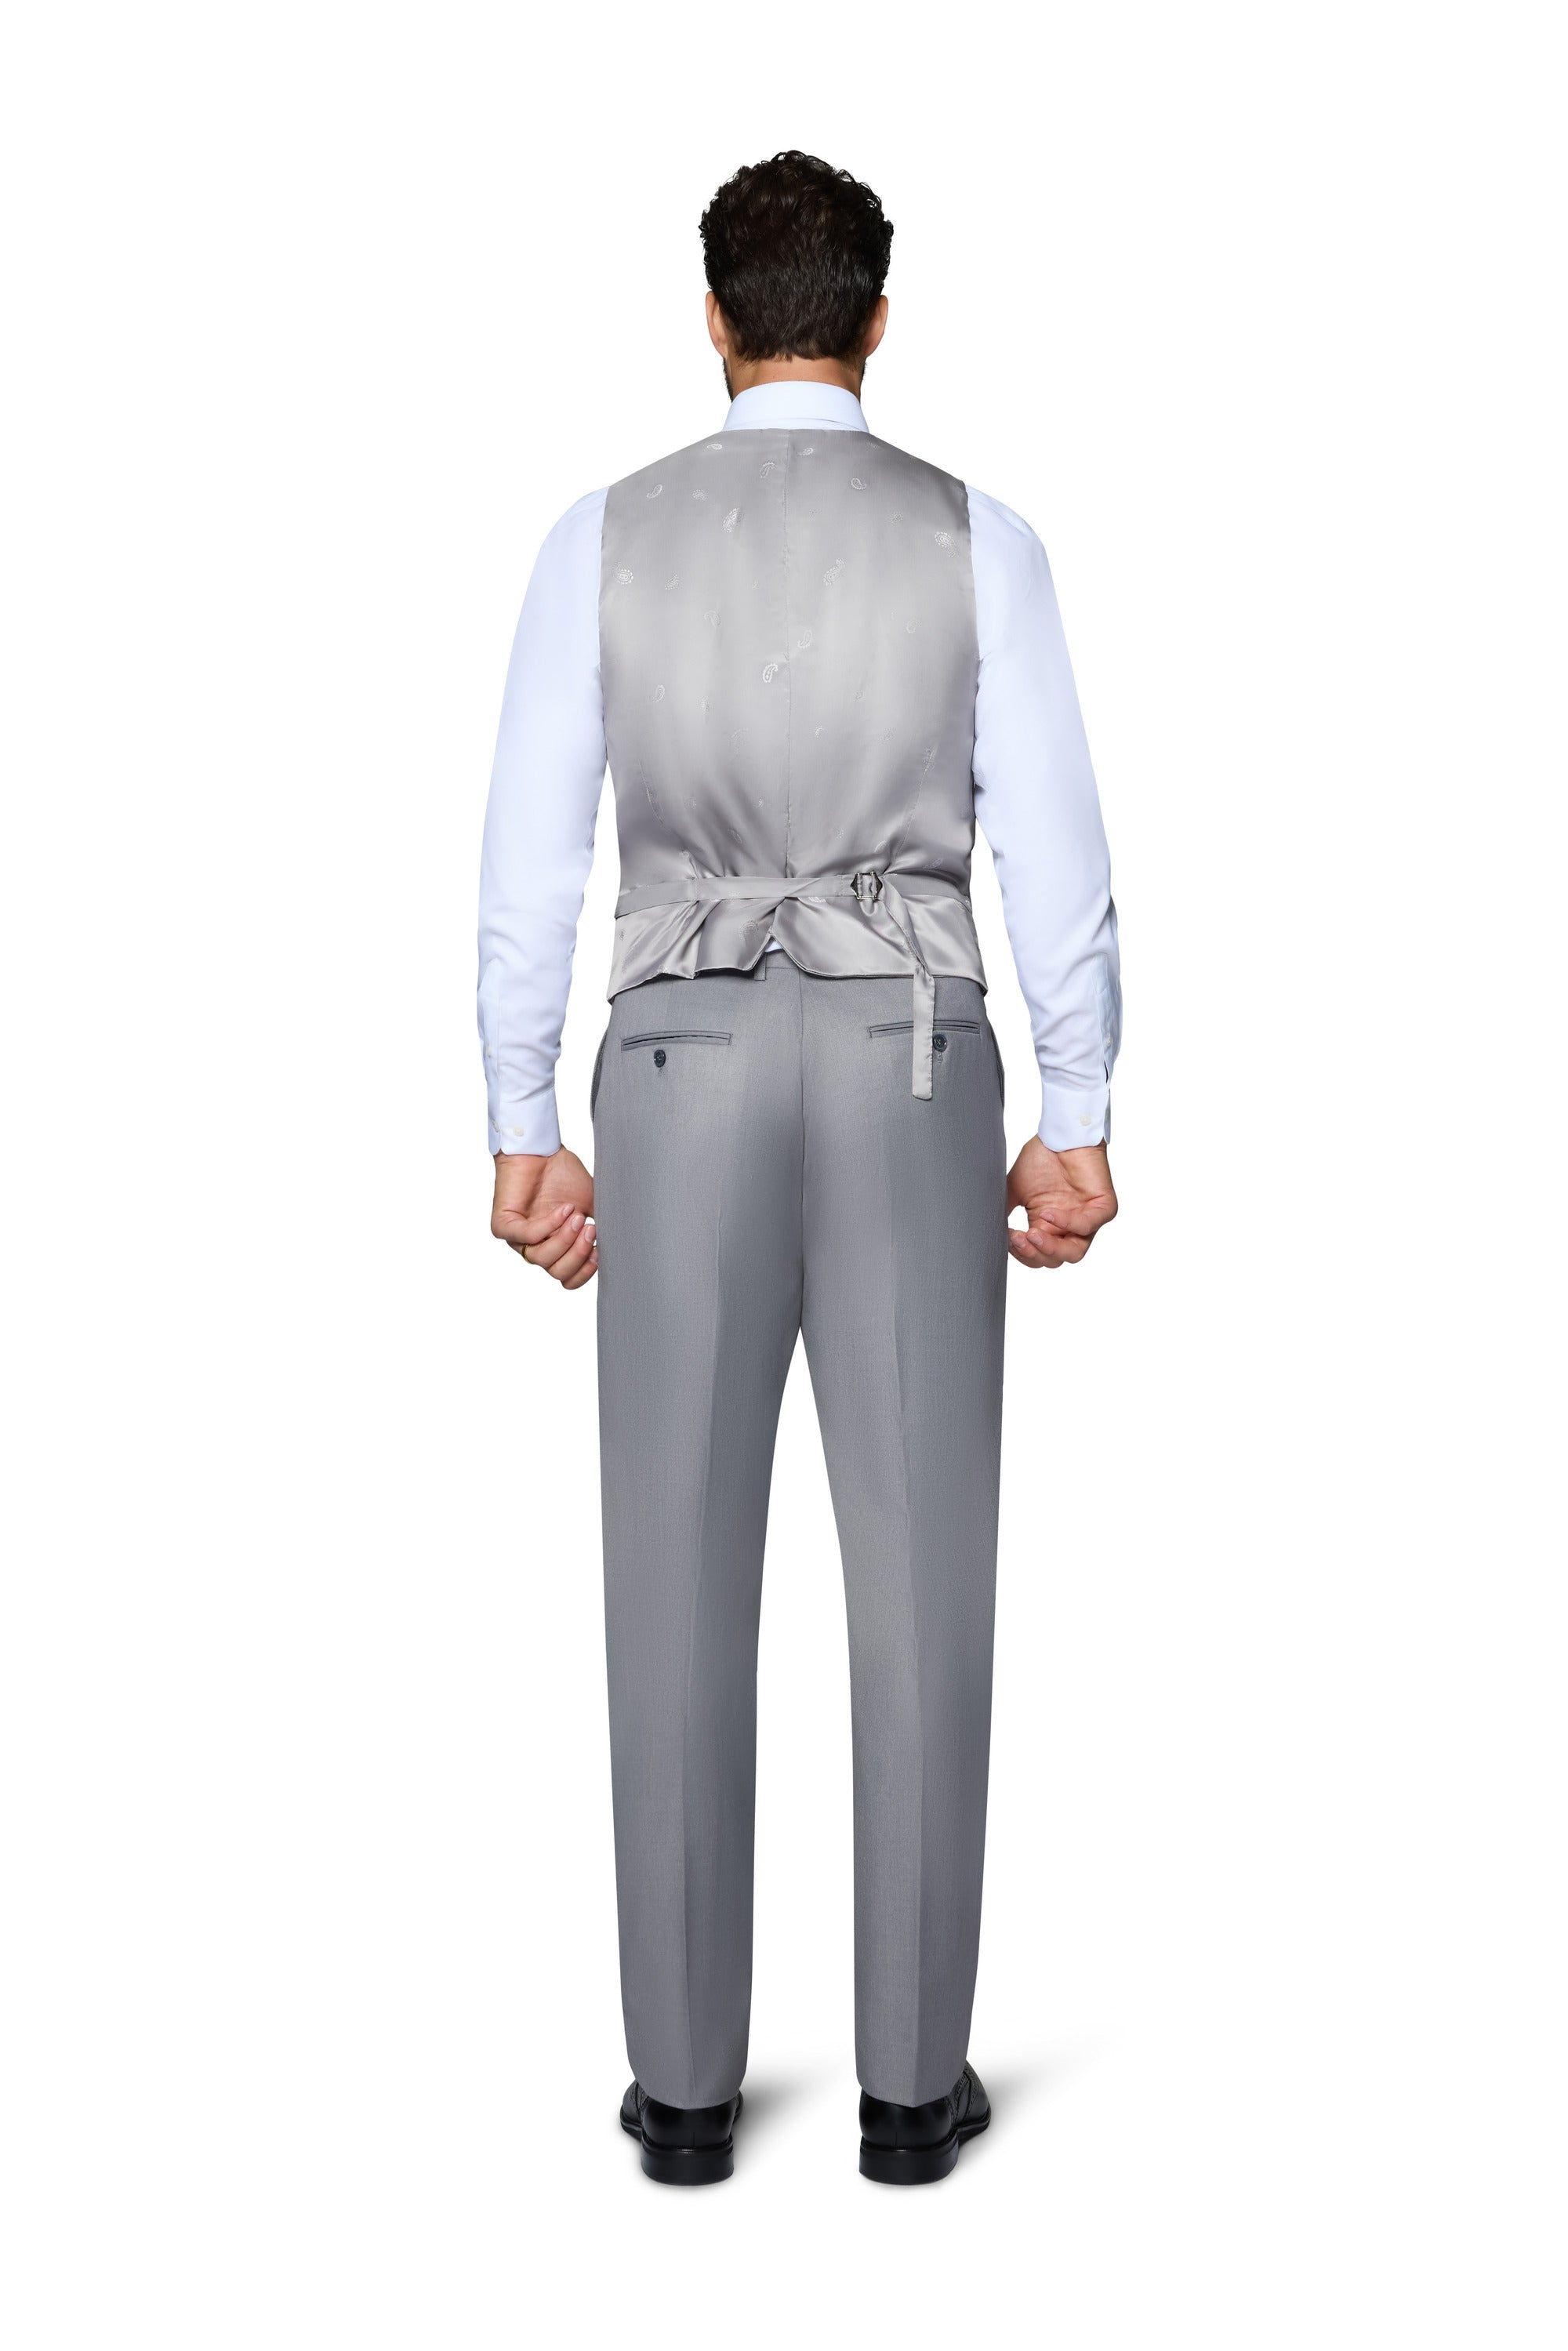 Berragamo Vested Solid Light Grey Slim Fit